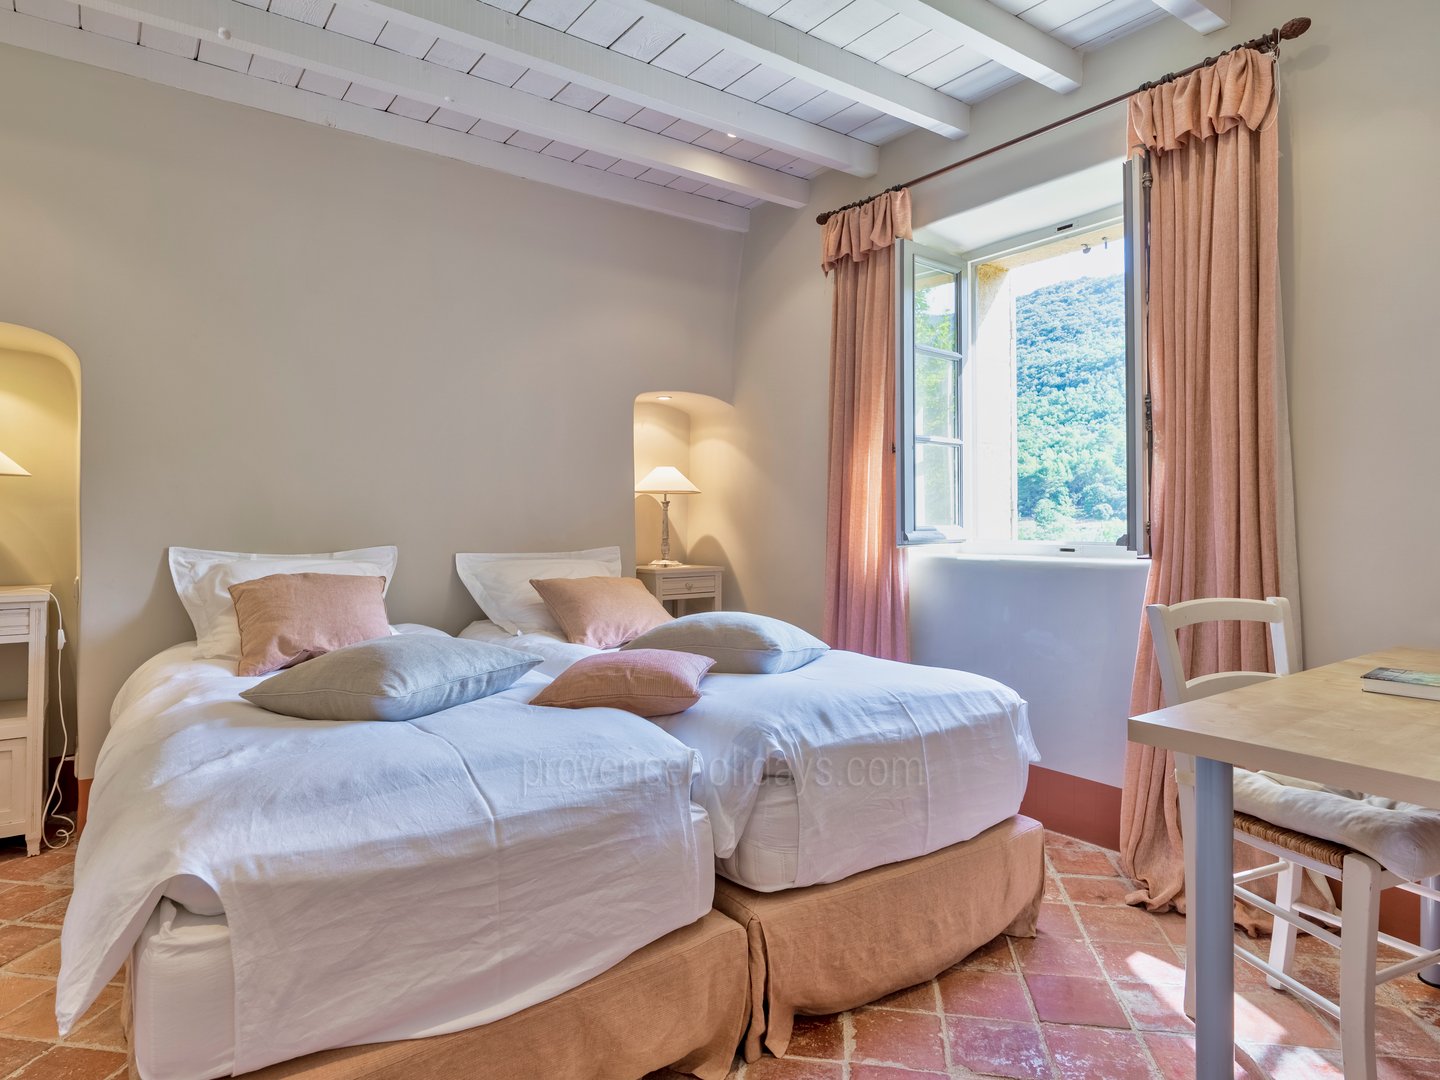 54 - Domaine de la Sainte Victoire: Villa: Bedroom